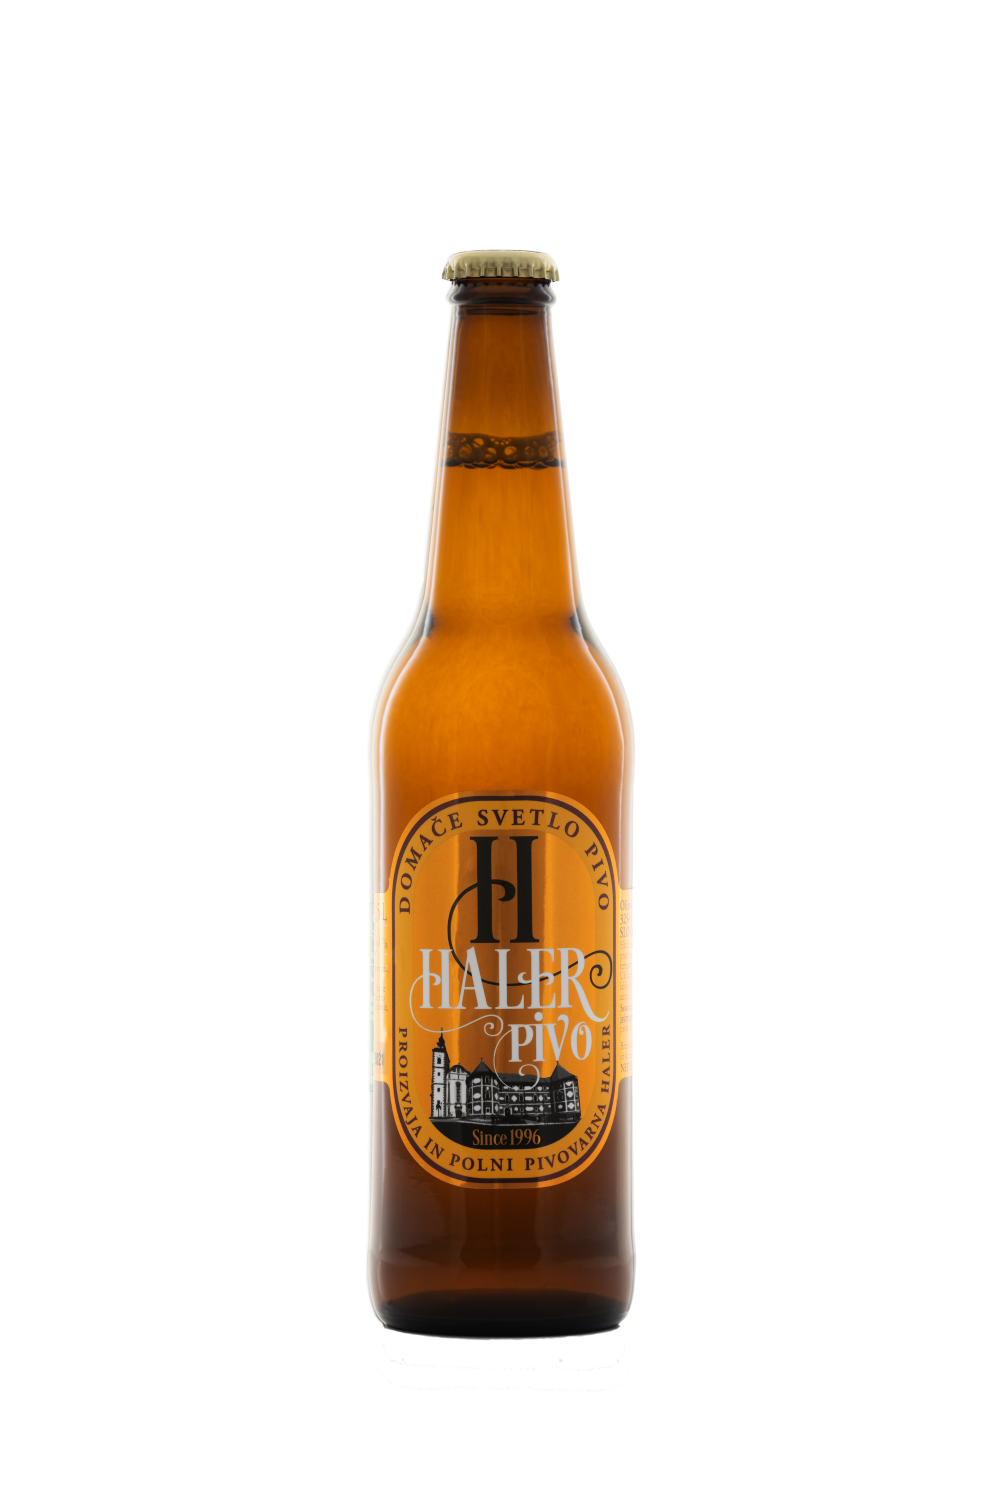 Pale Haler beer